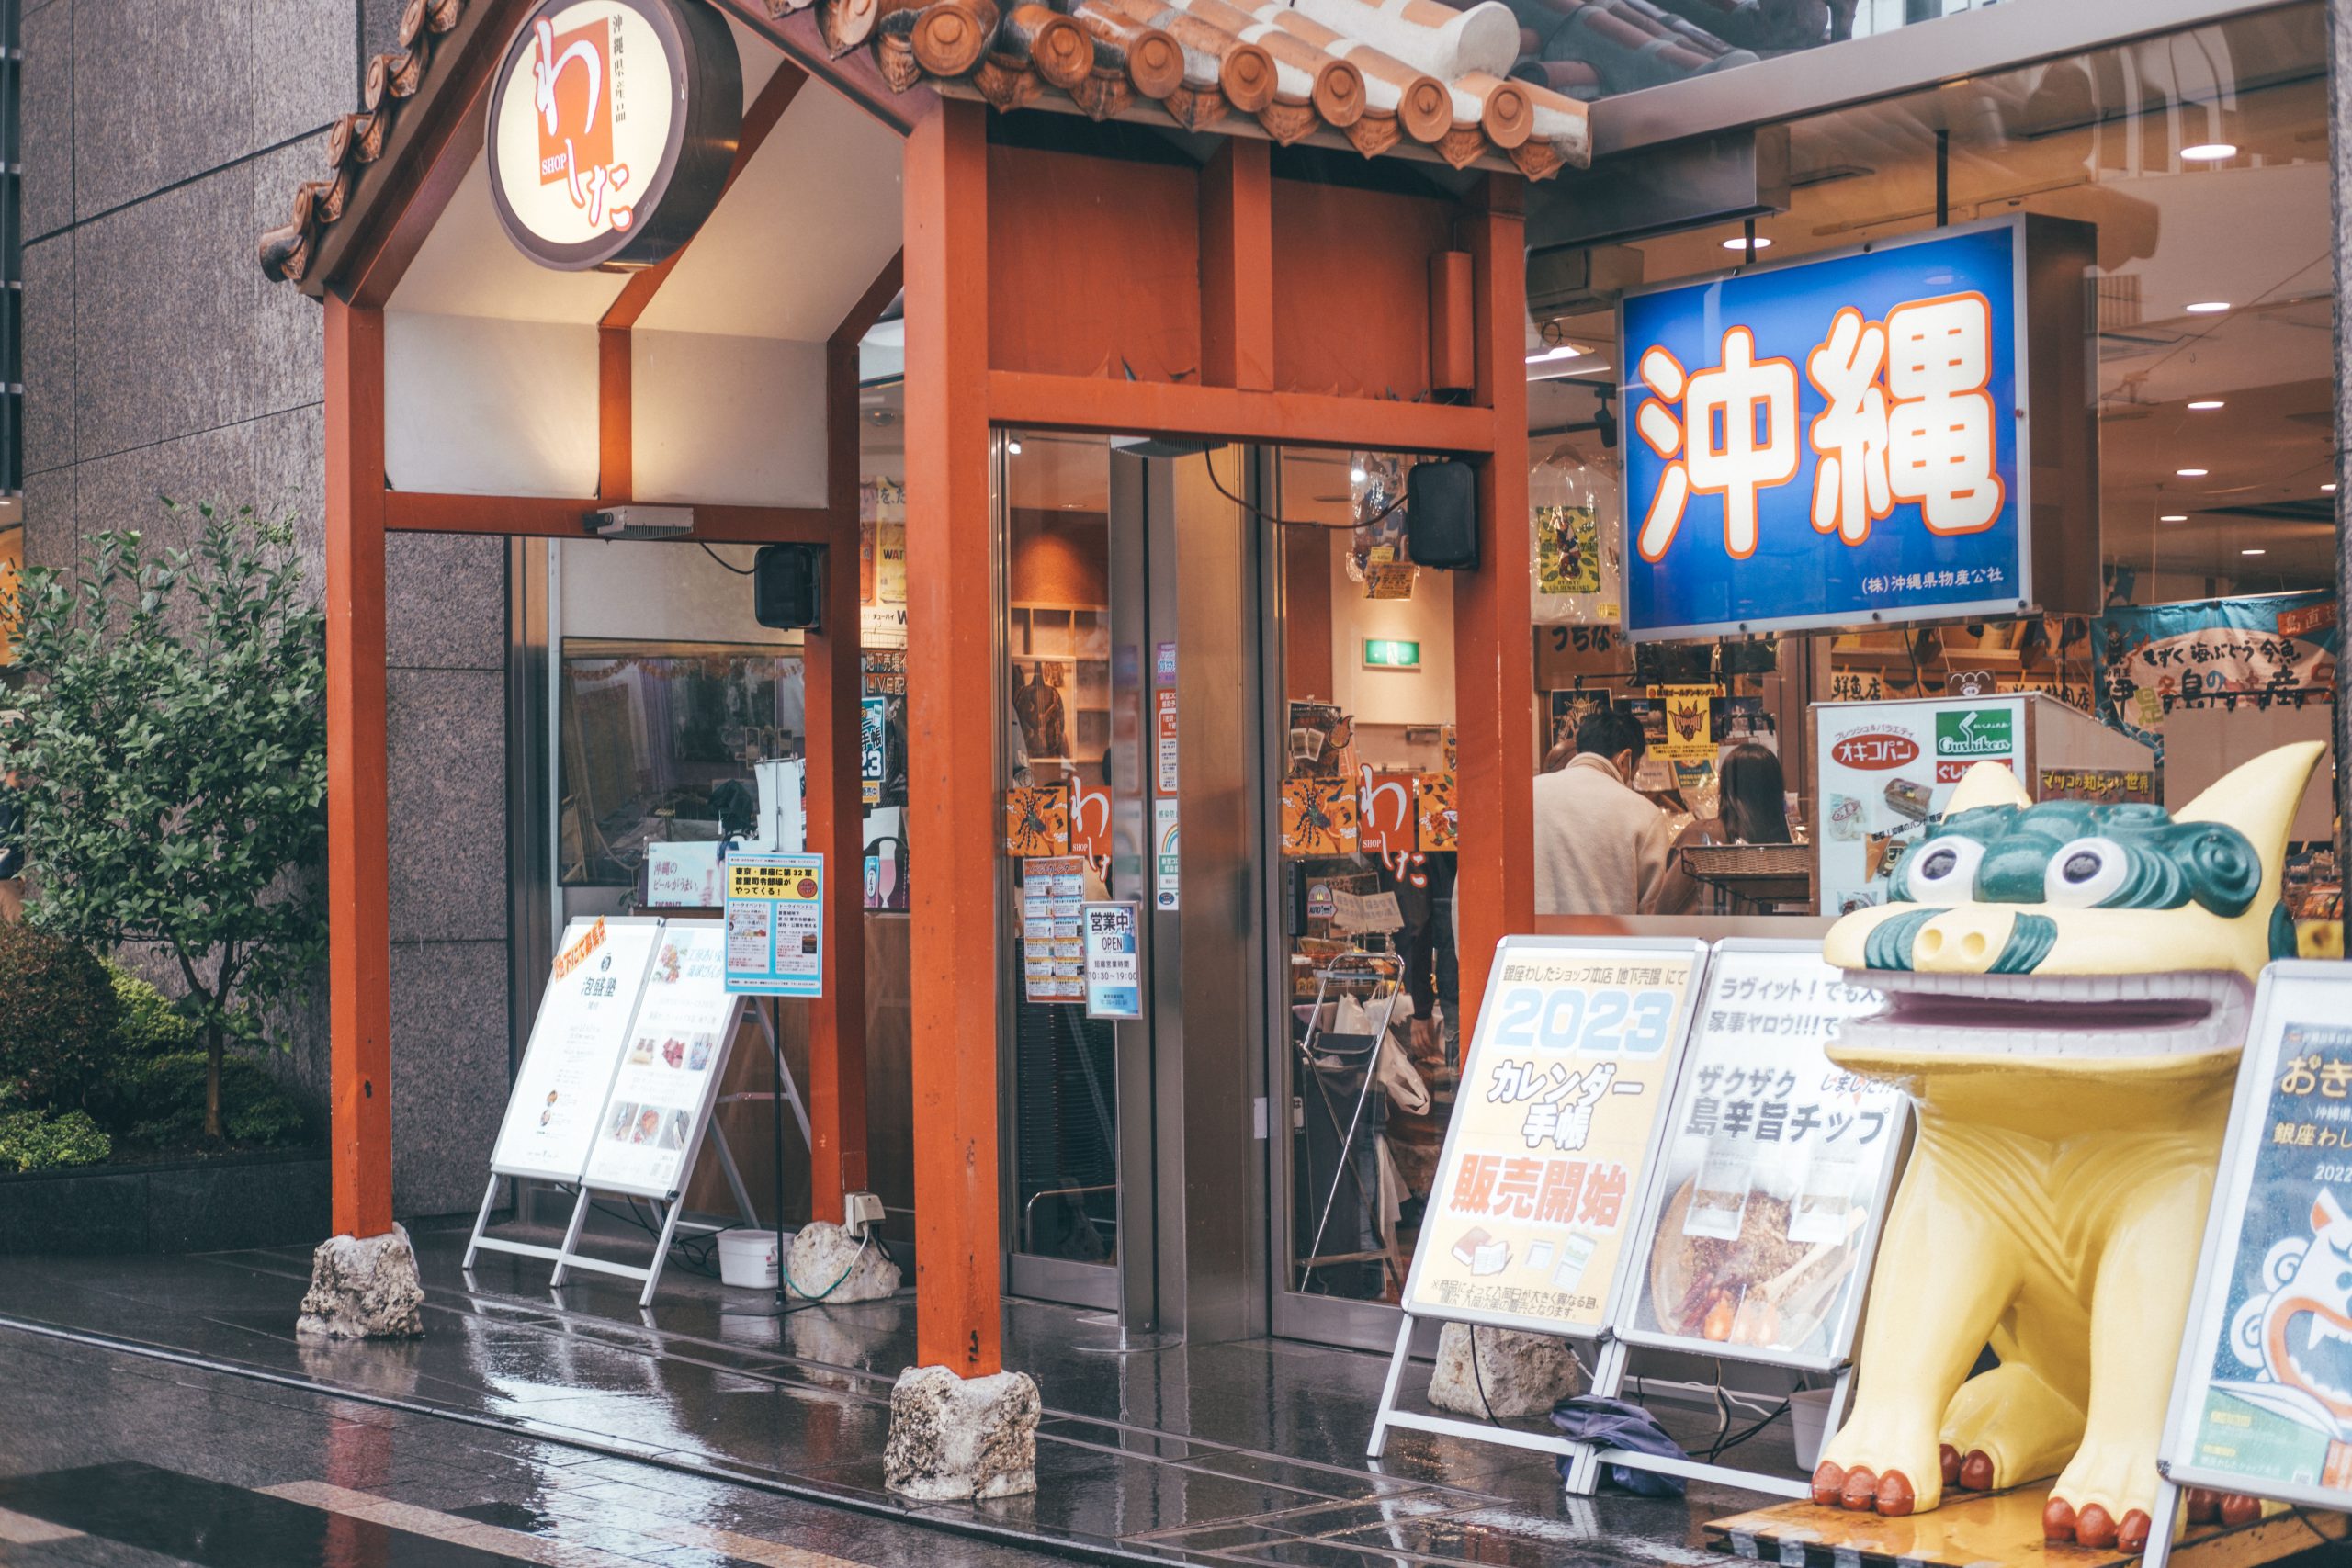 Entrance to Washita Ginza - the Okinawan store